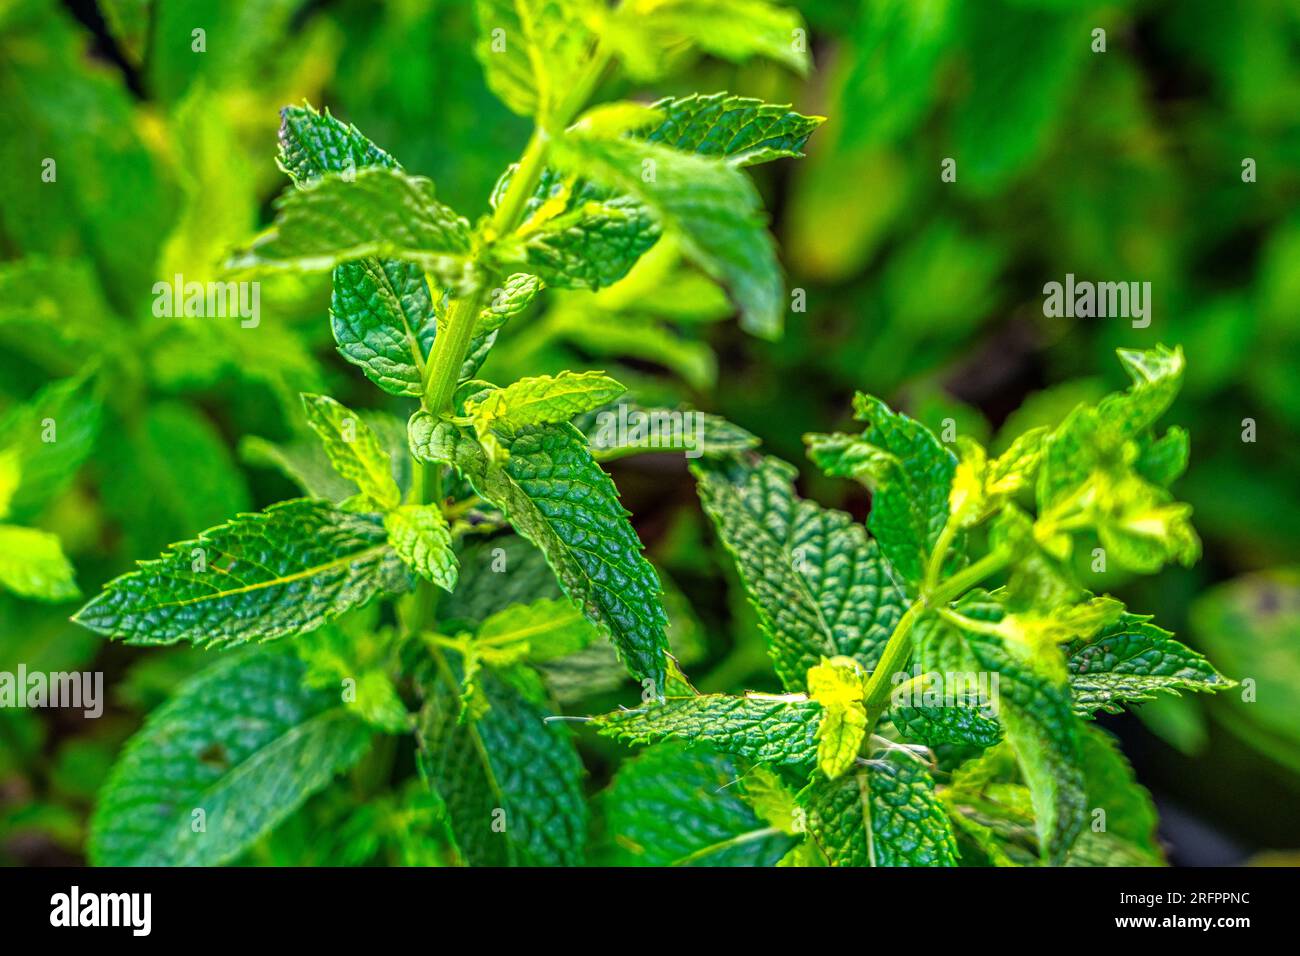 Feuille de menthe fraîche sur fond vert. Mentha spicata est une herbe aromatique appartenant à la famille des Lamiaceae au marché fermier Banque D'Images